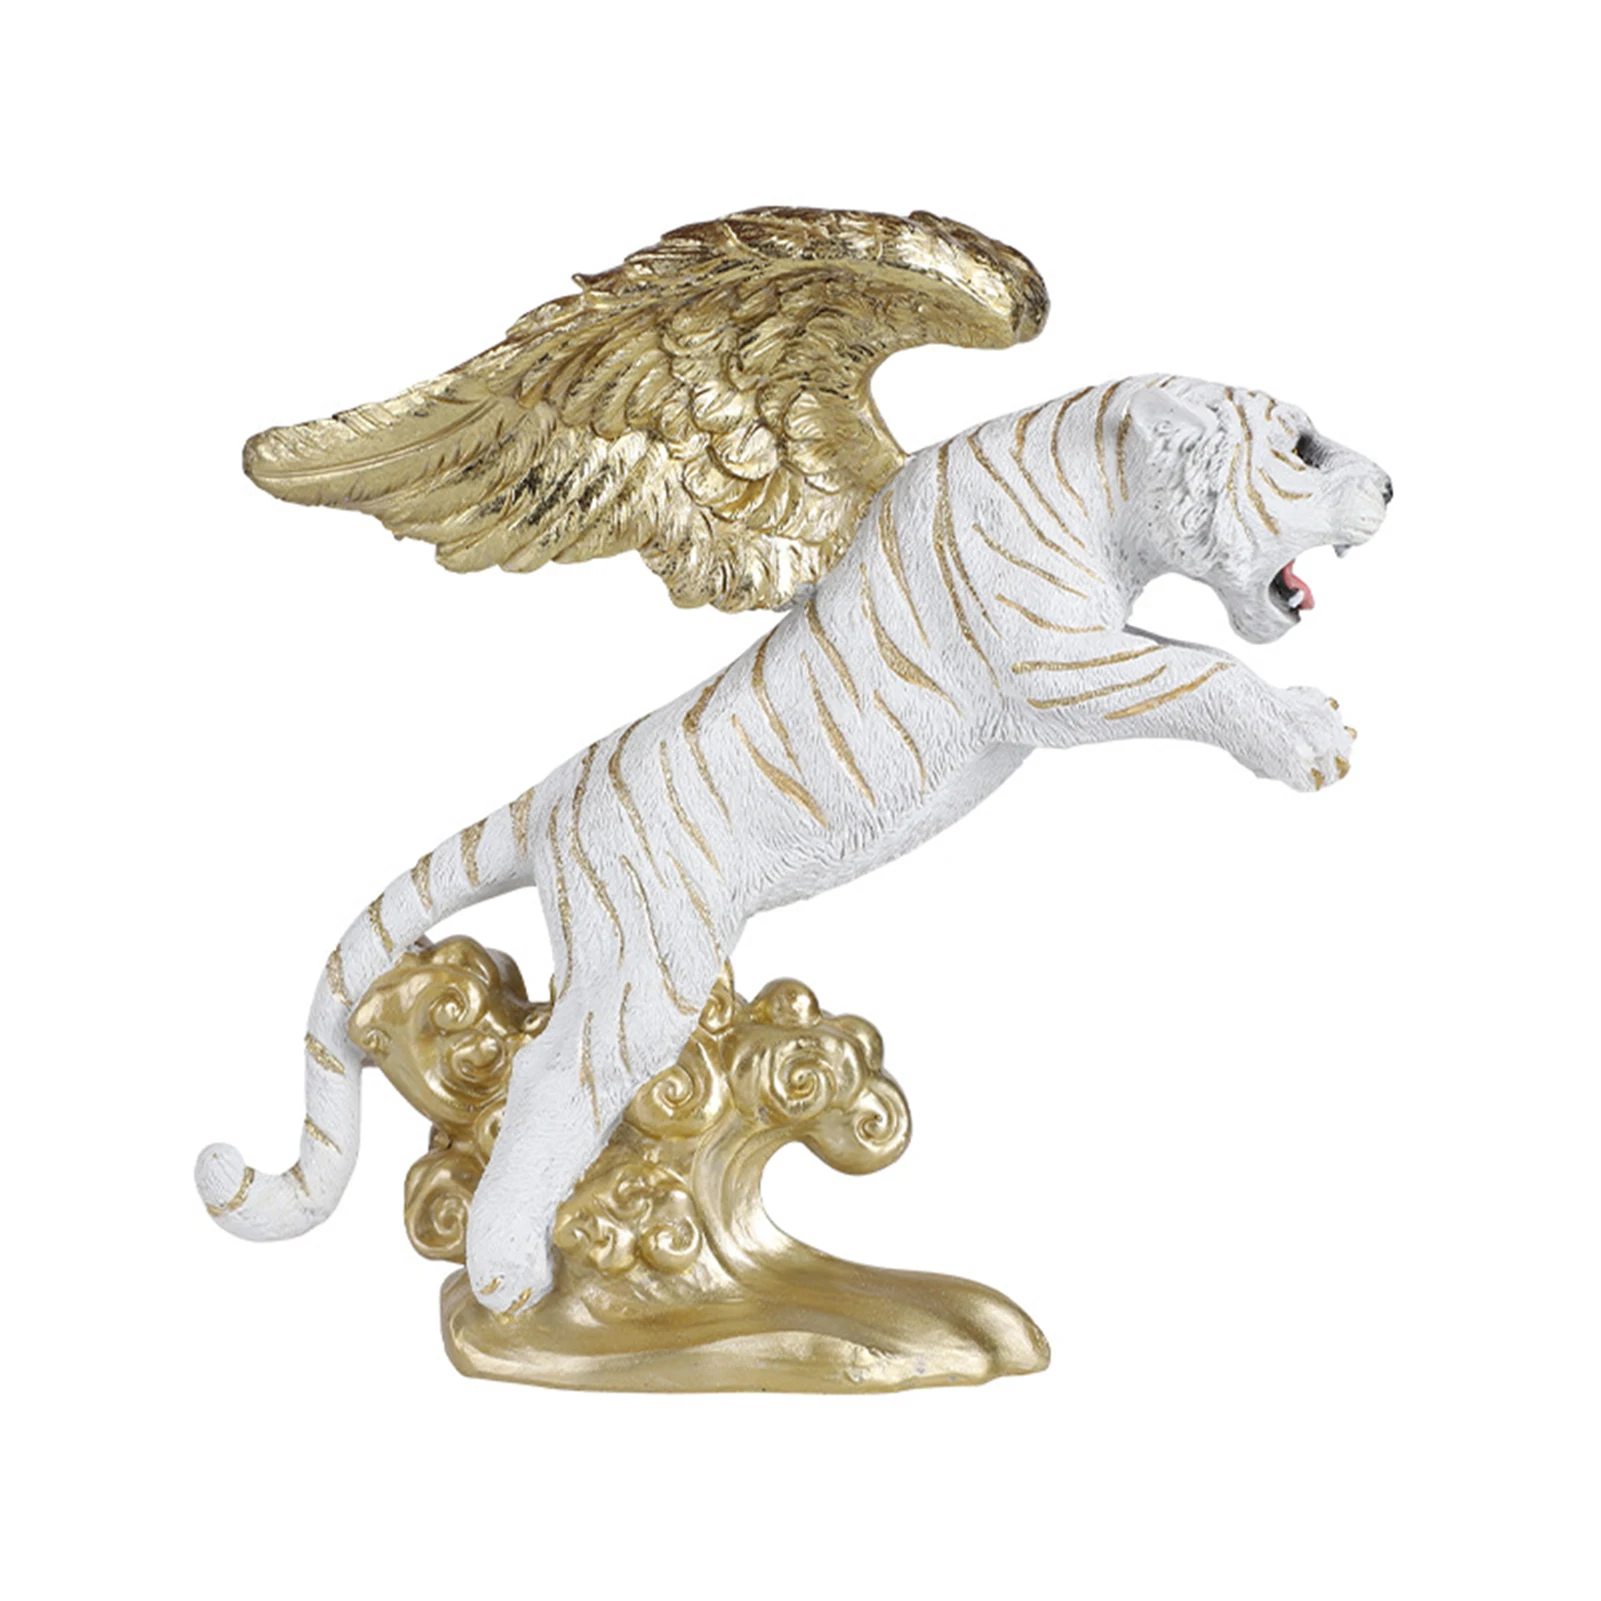 

Фигурка тигра, Статуя китайского тигра на год Тигра, новогодние украшения 2022 года, тигр фэн-шуй, украшение с тигром